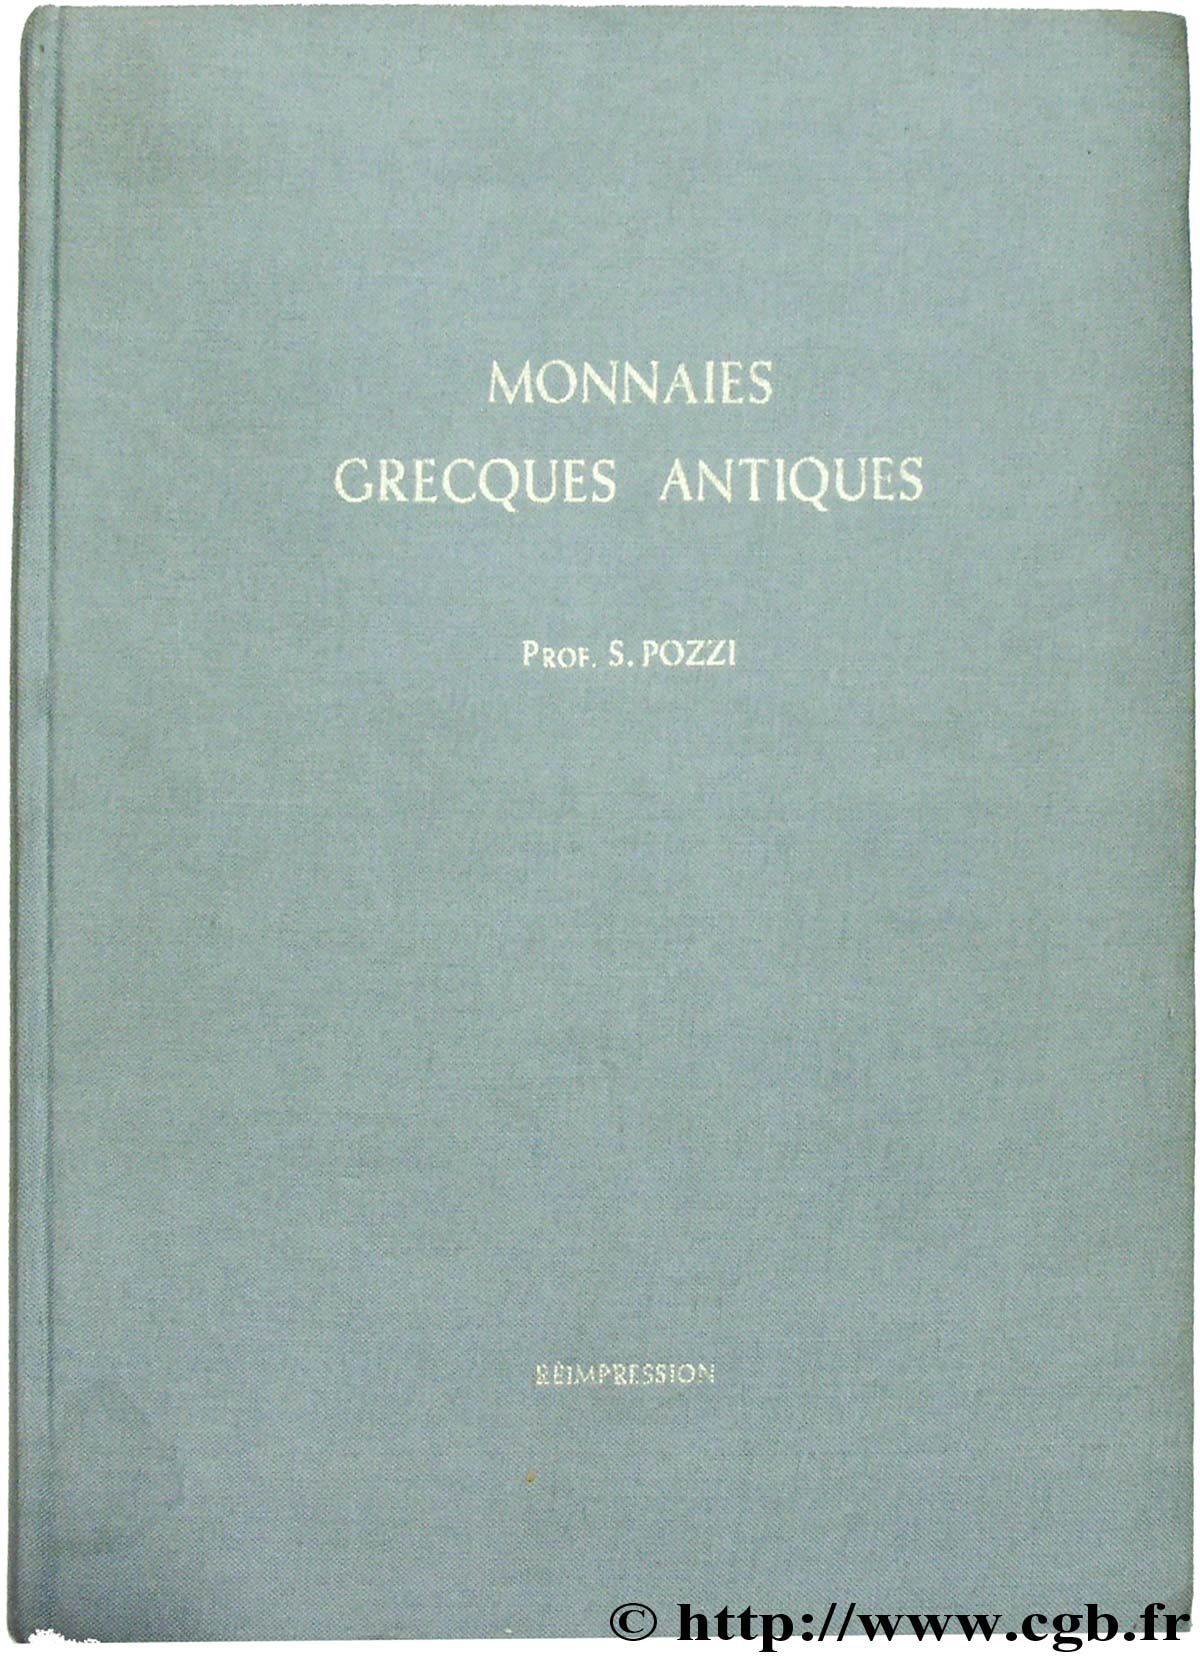 Catalogue des monnaies grecques antiques de l ancienne collection Pozzi 